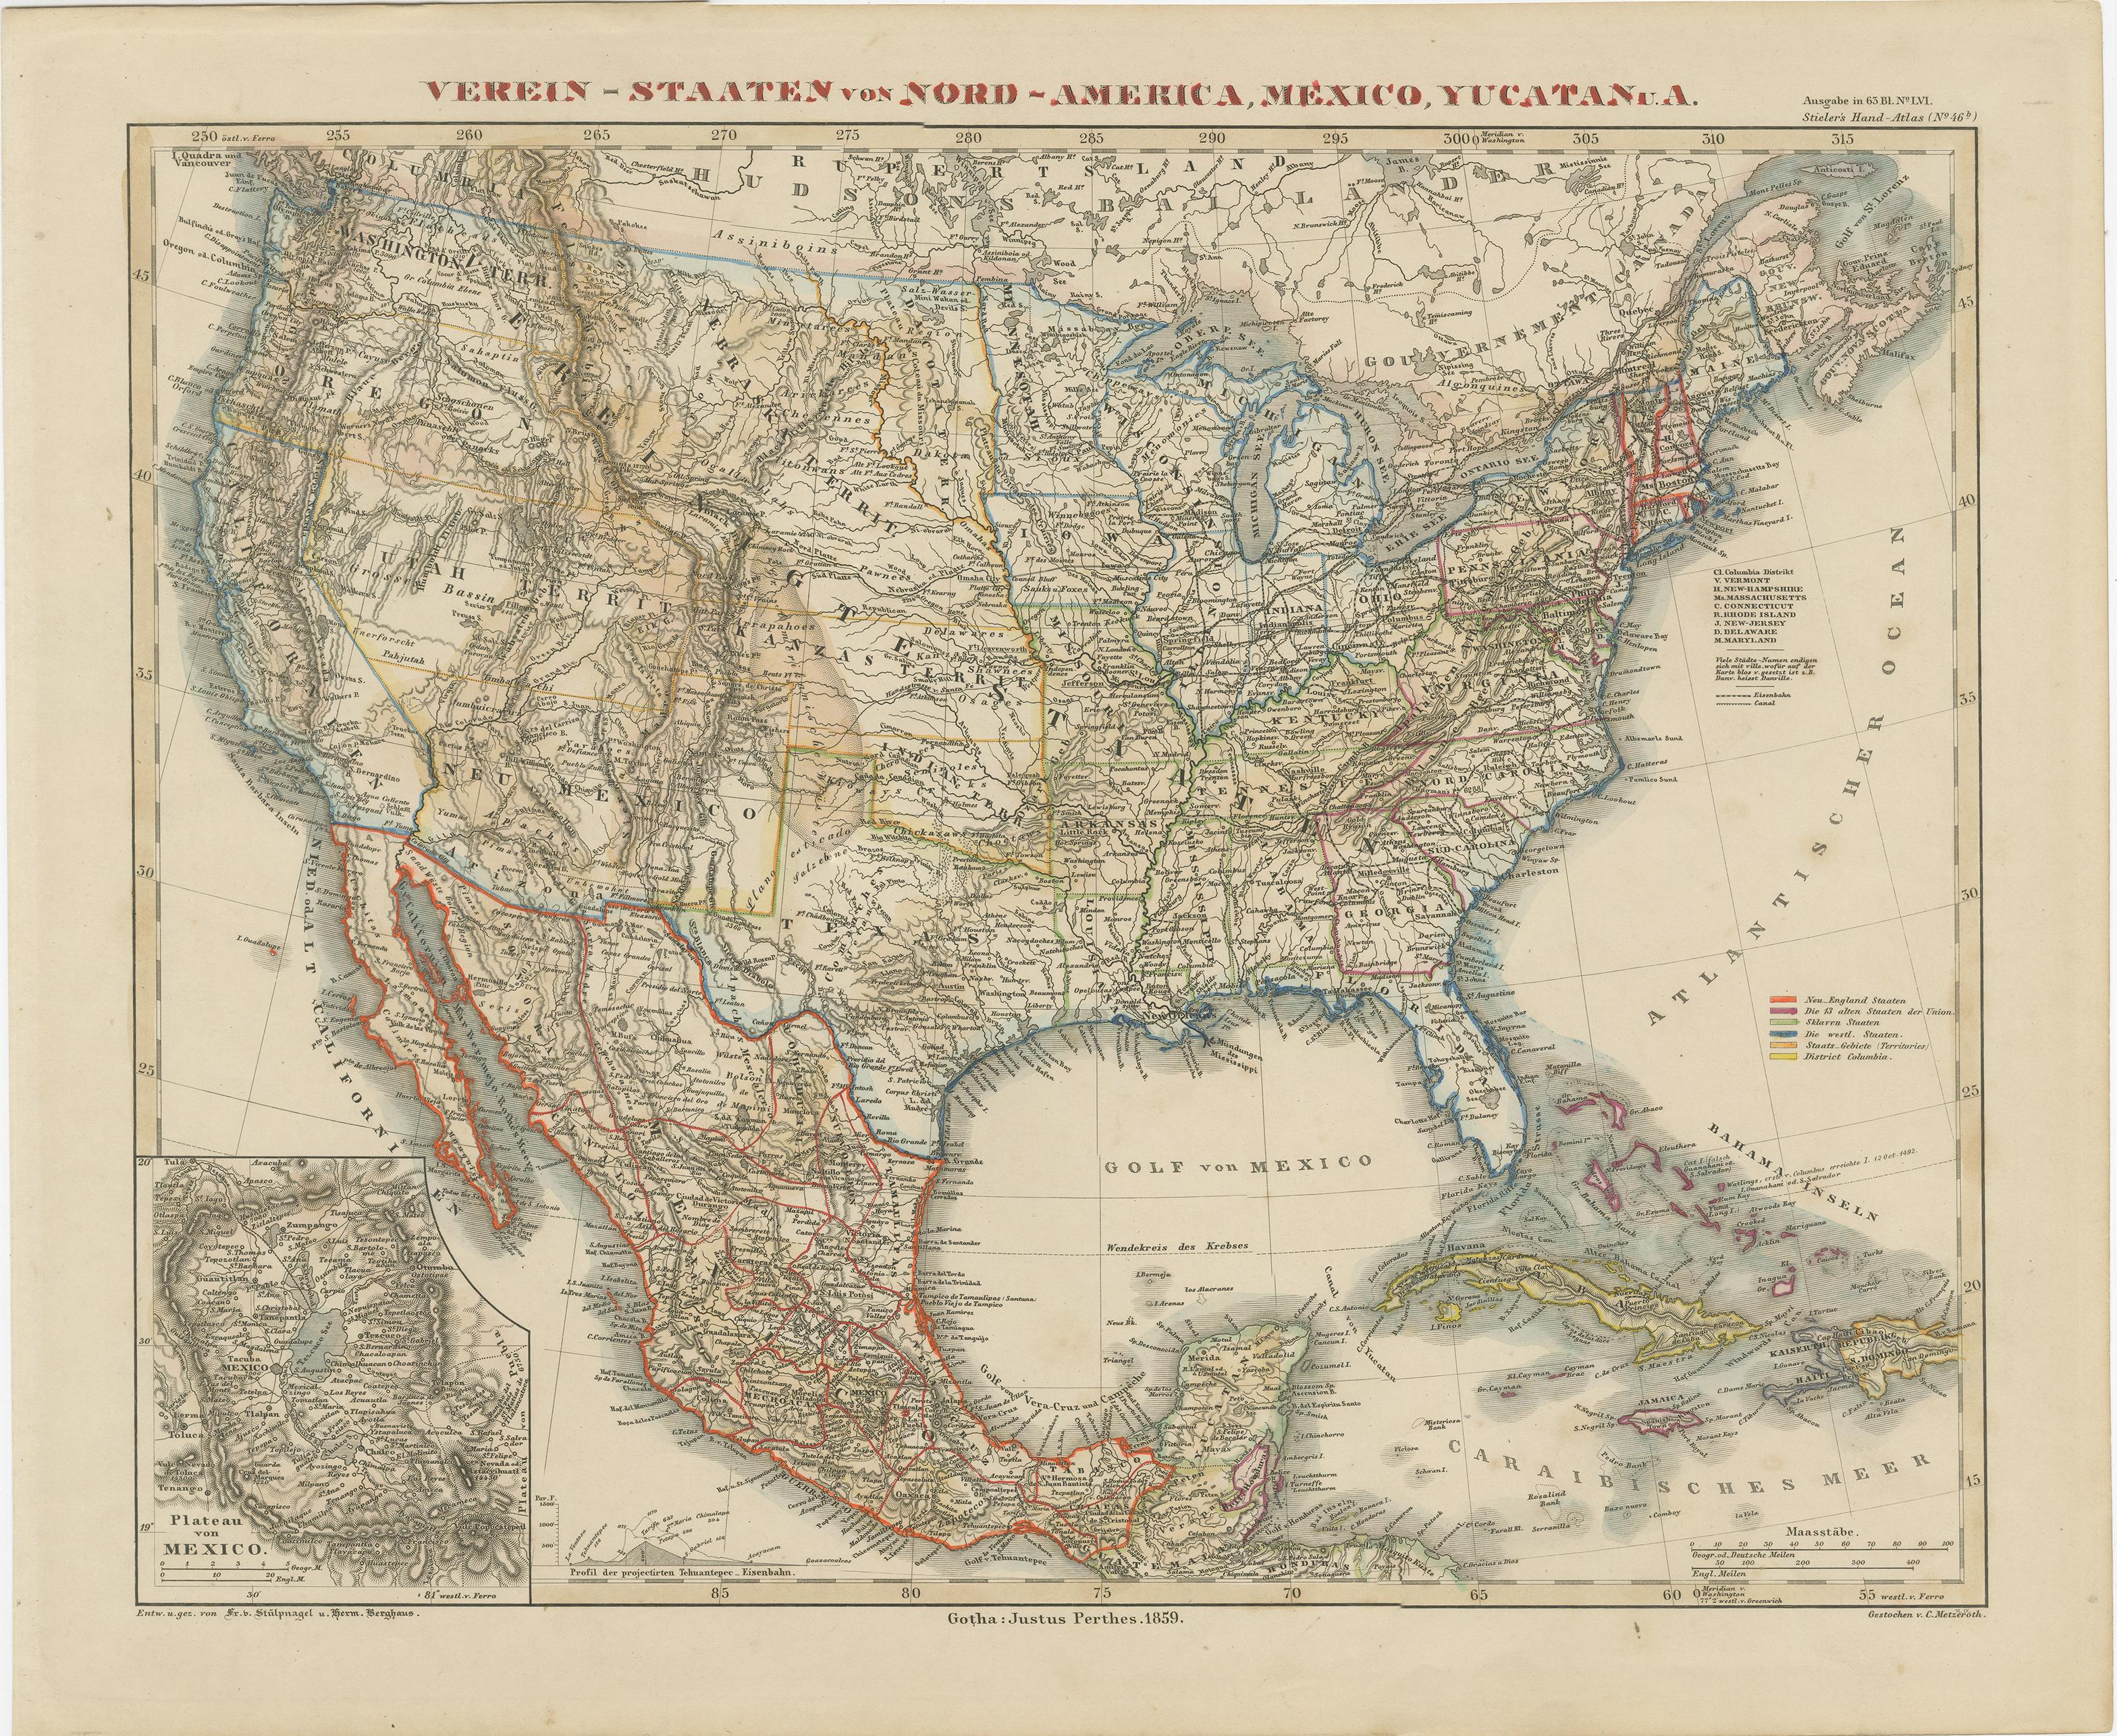 Antike Karte mit dem Titel 'Vereins-Staaten von Nord-Amerika, Mexiko, Yucatan u.a.'. Sehr detaillierte Karte der Vereinigten Staaten von Amerika mit der Karibik. Mit einer beigefügten Karte der Umgebung von Mexiko-Stadt.

Diese Karte stammt aus